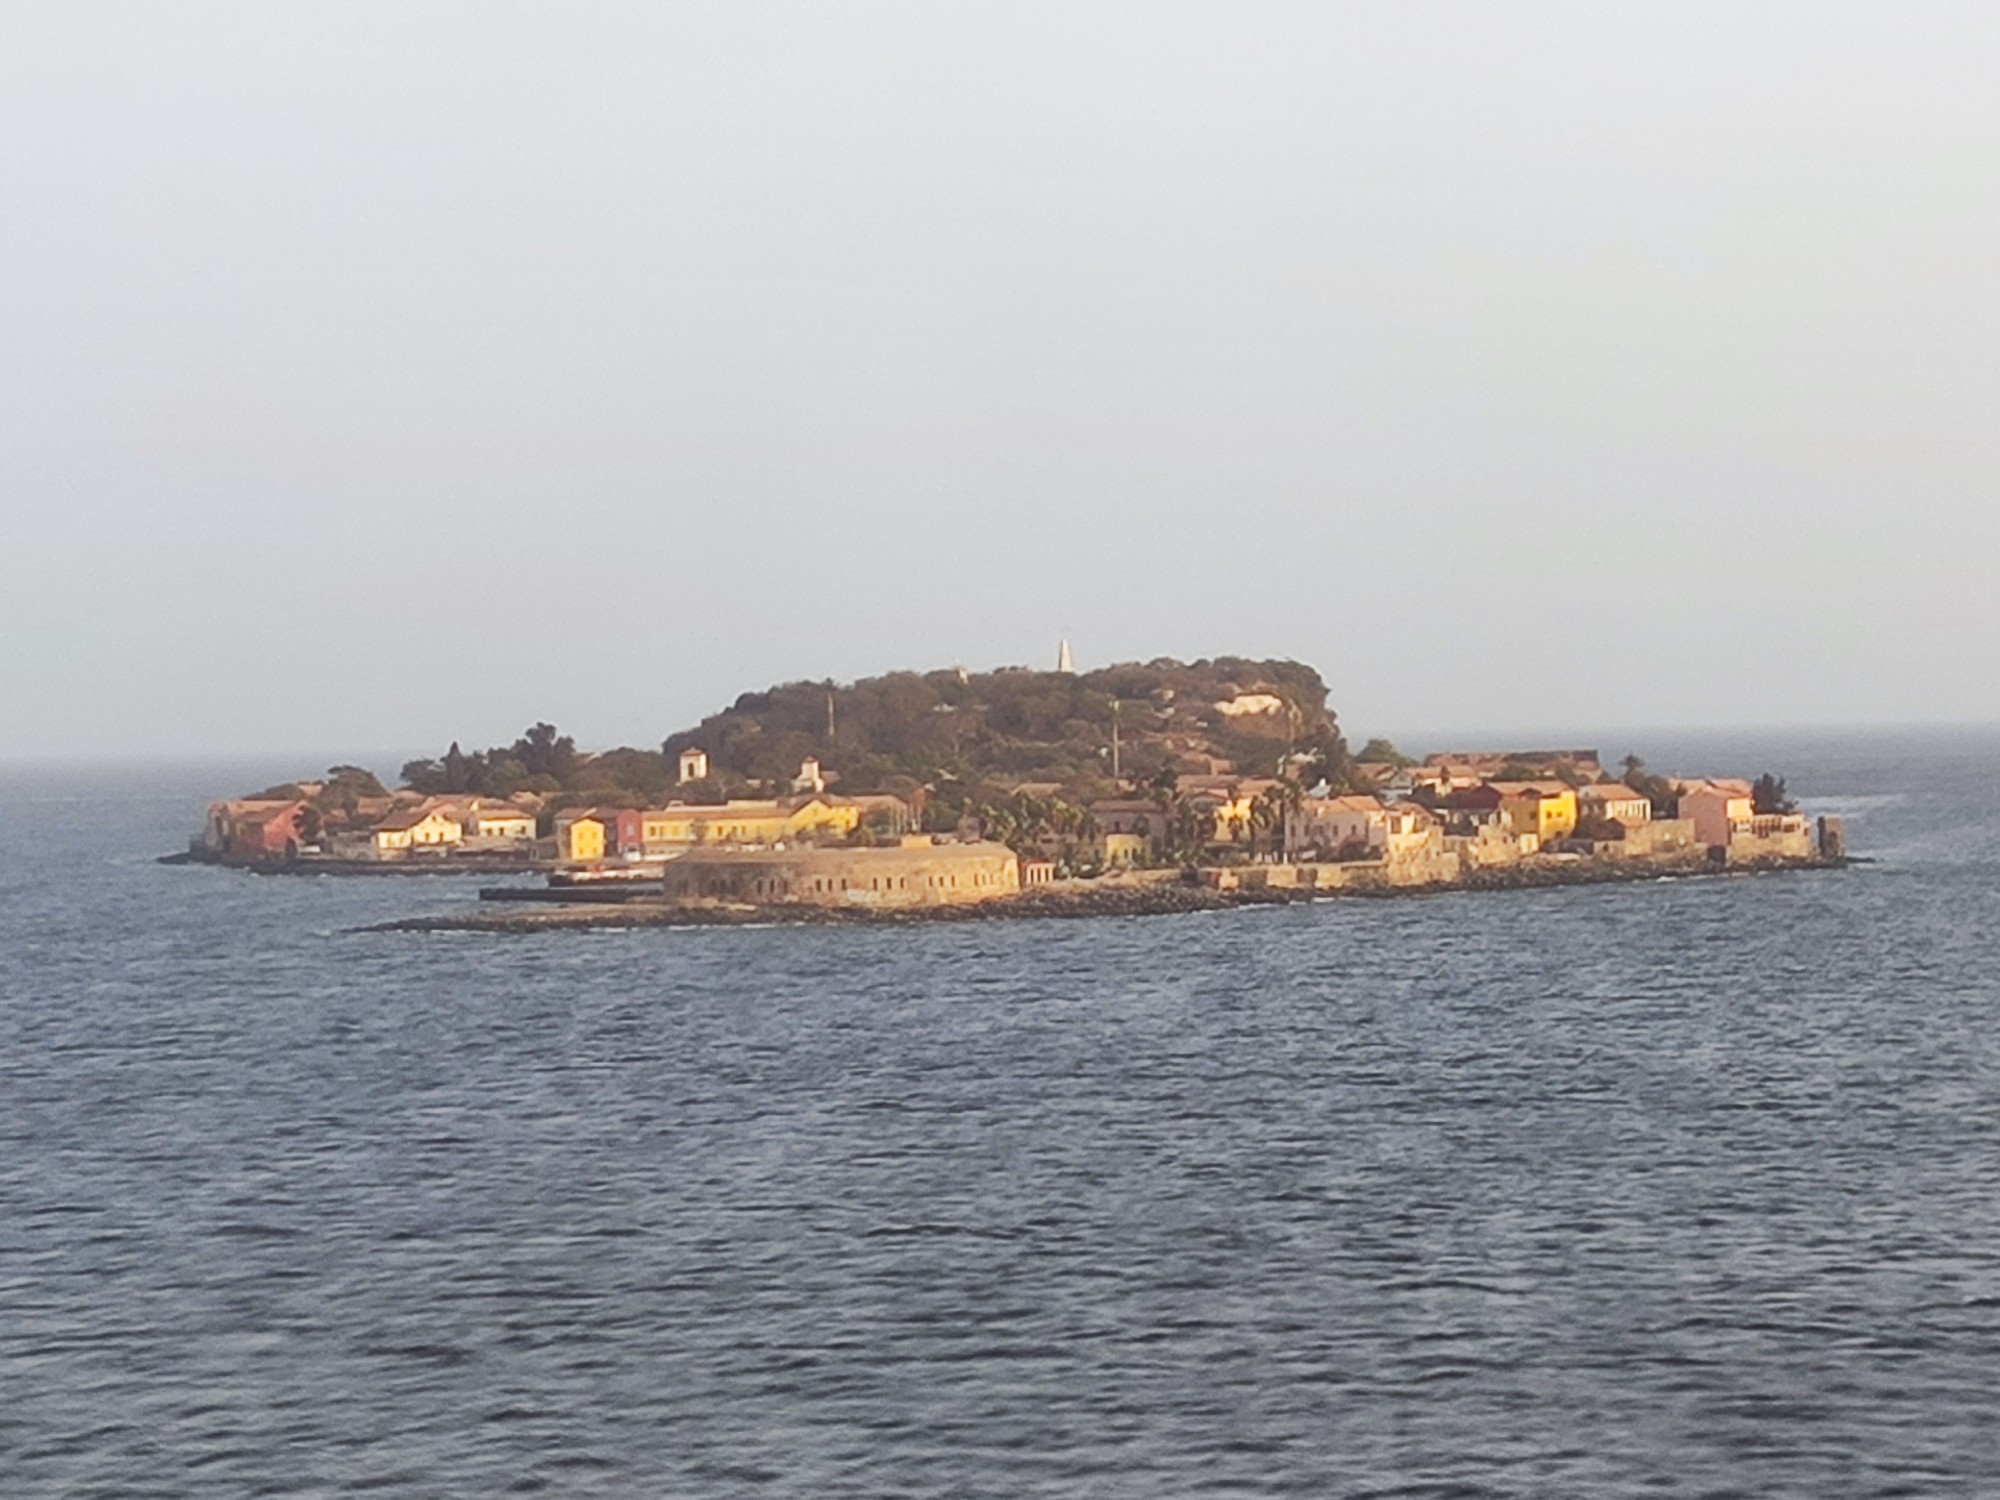 Île de Gorée slave island